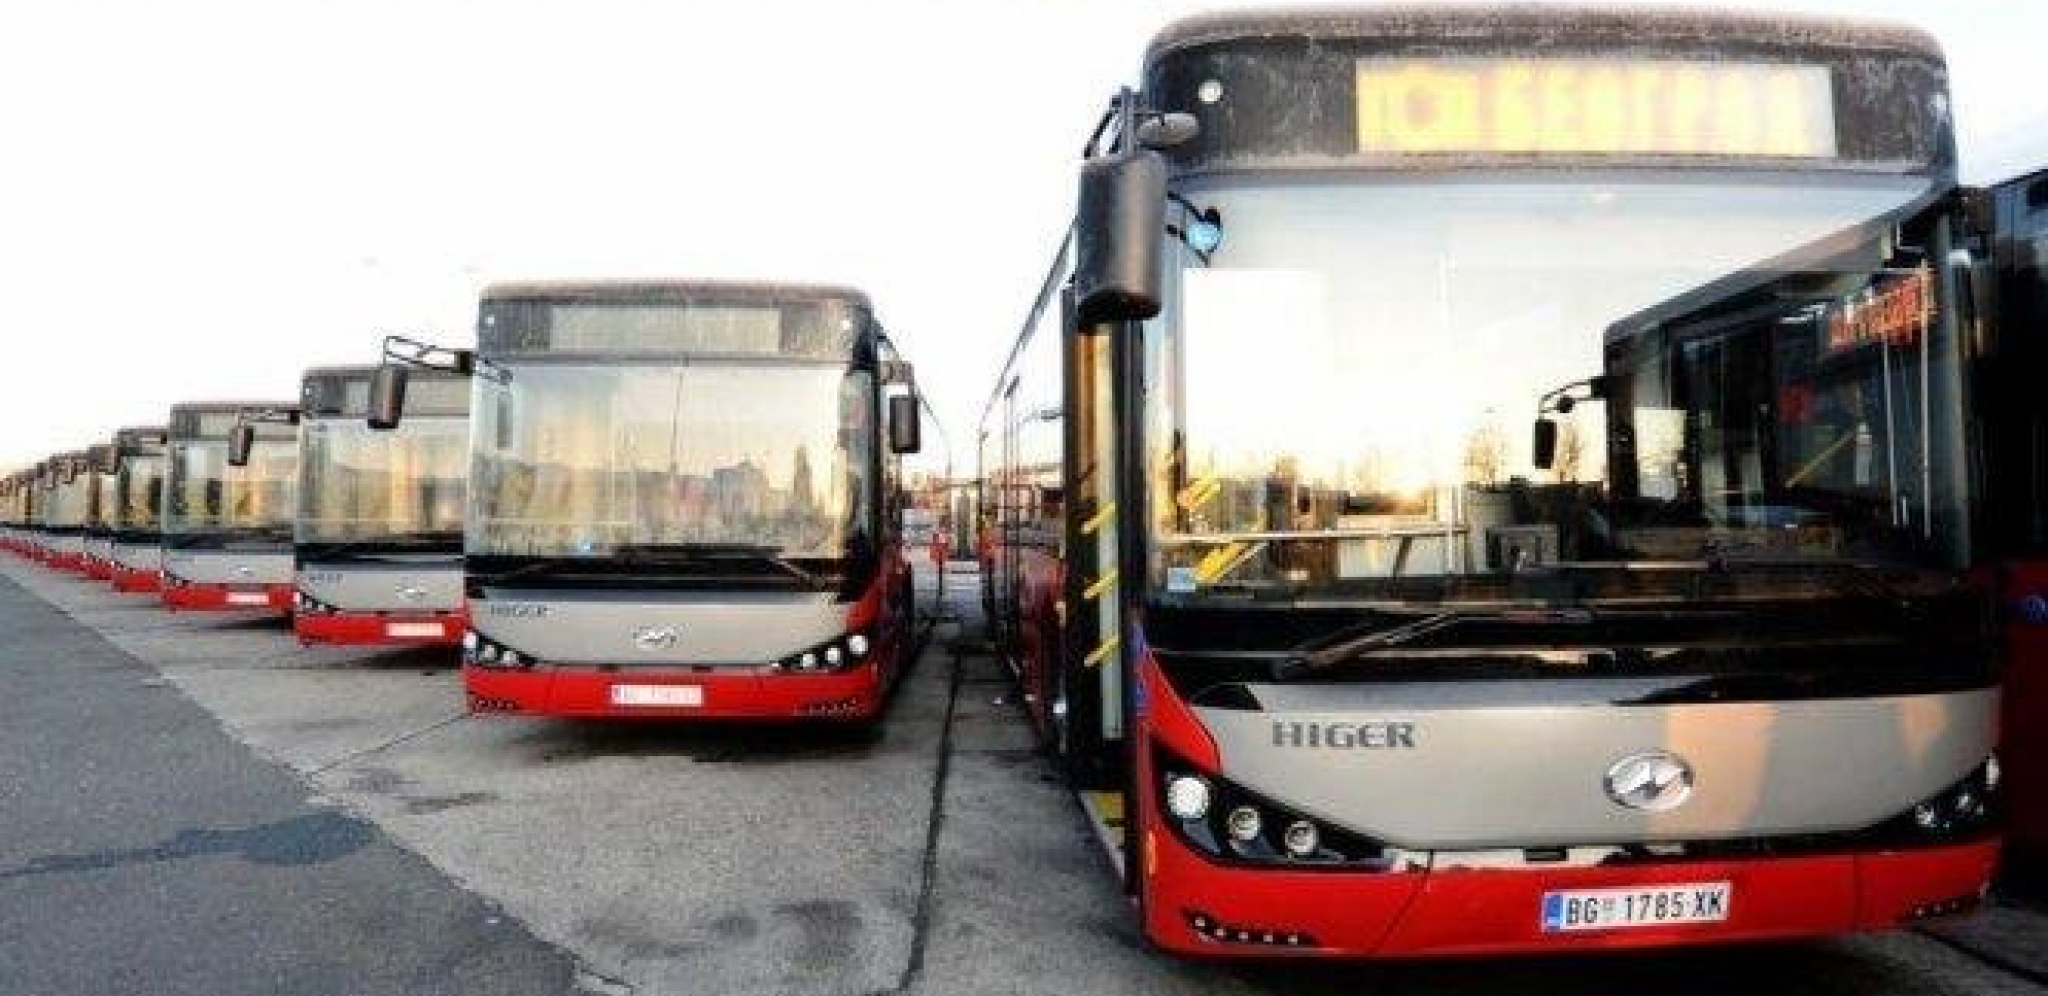 VELIKE IZMENE U CENTRU BEOGRADA Ukidaju se sledeća stajališta, a biće promenjen i smer kretanja autobusa!